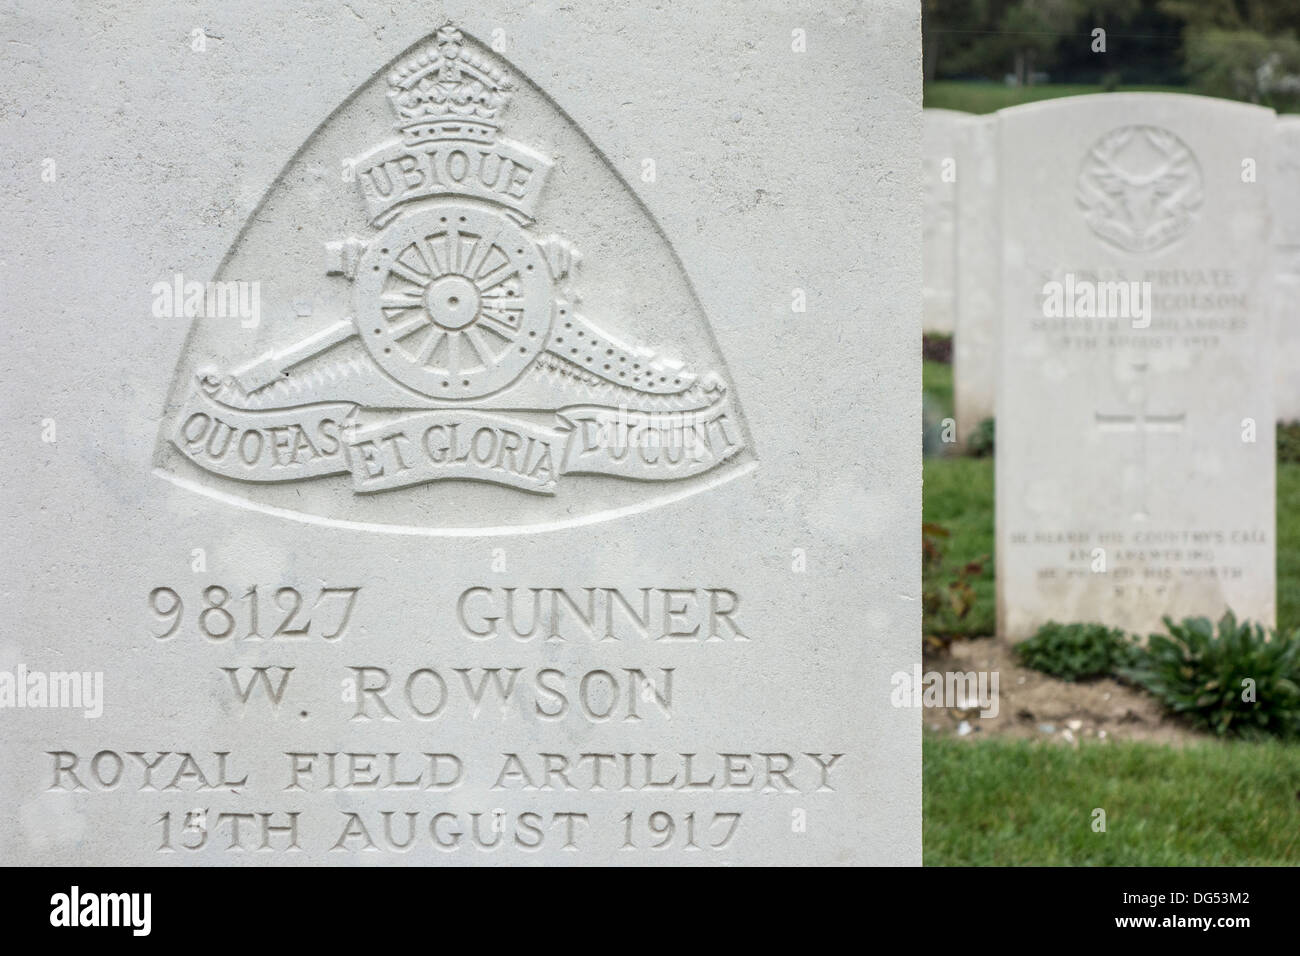 Artillerie royale sur l'insigne régimentaire de la pierre tombale du soldat de la Première Guerre mondiale, cimetière de la Commonwealth War Graves Commission Banque D'Images